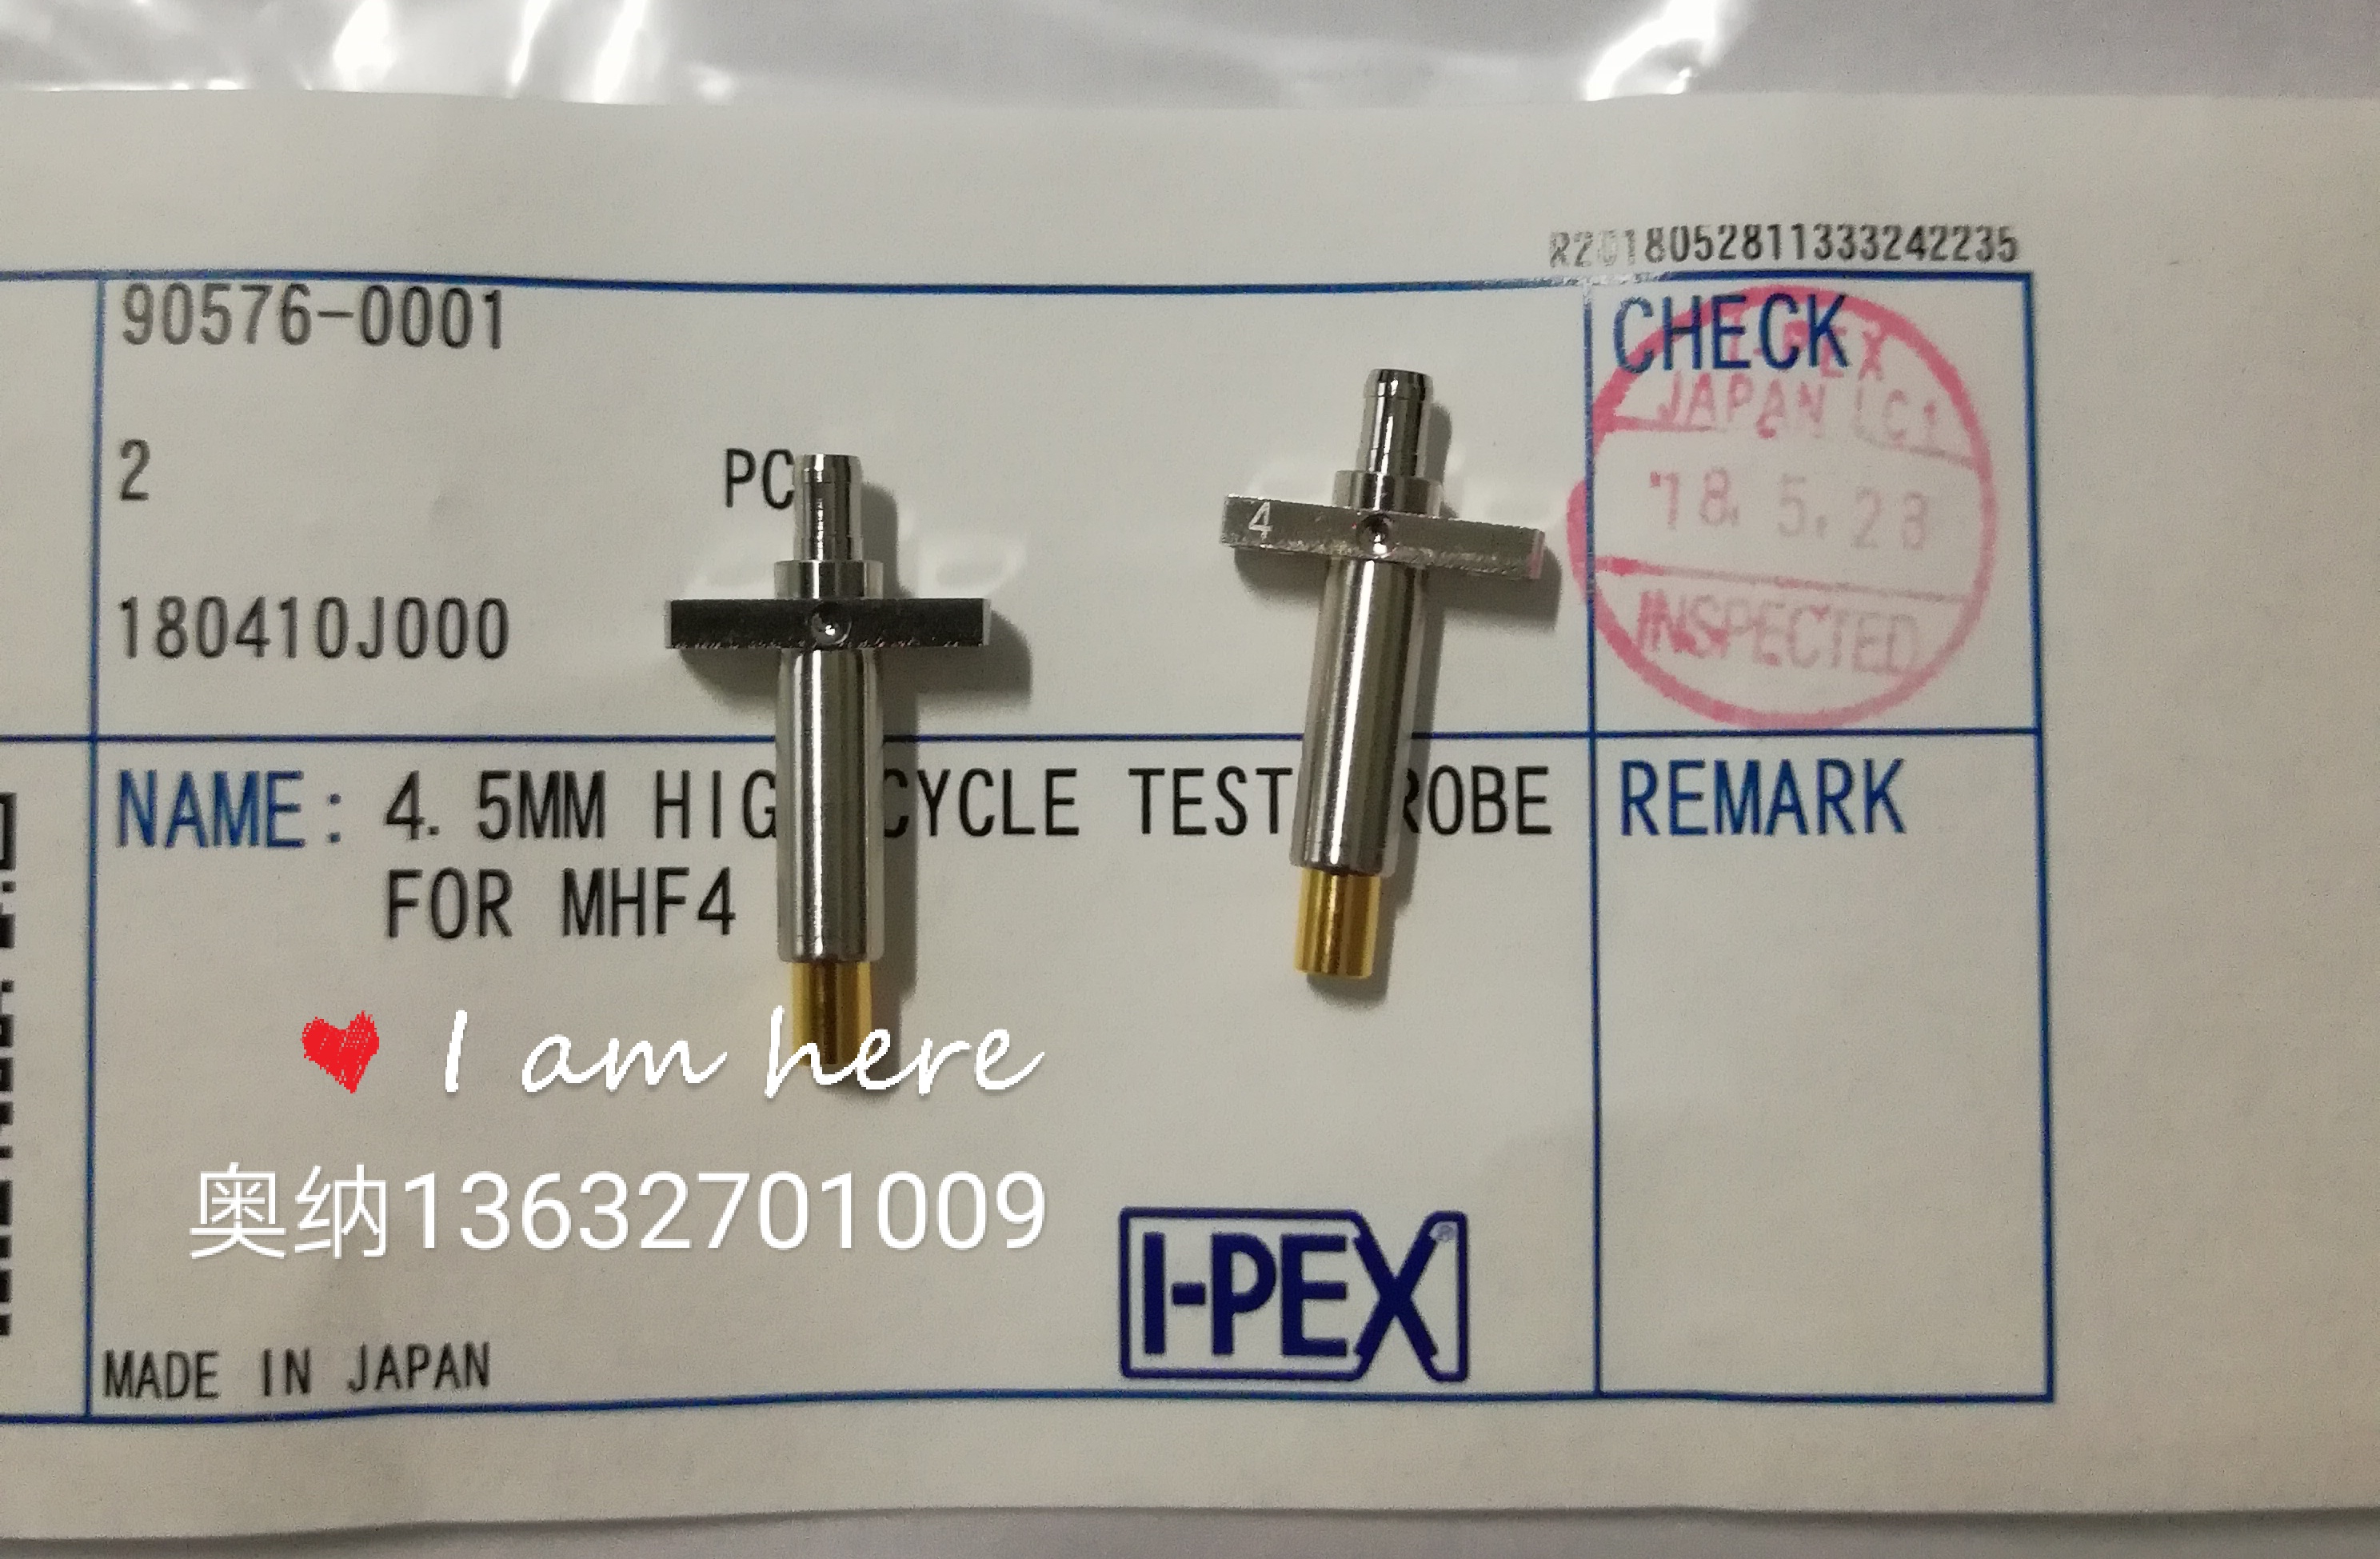 供应 I-PEX射频测试探针90576-0001